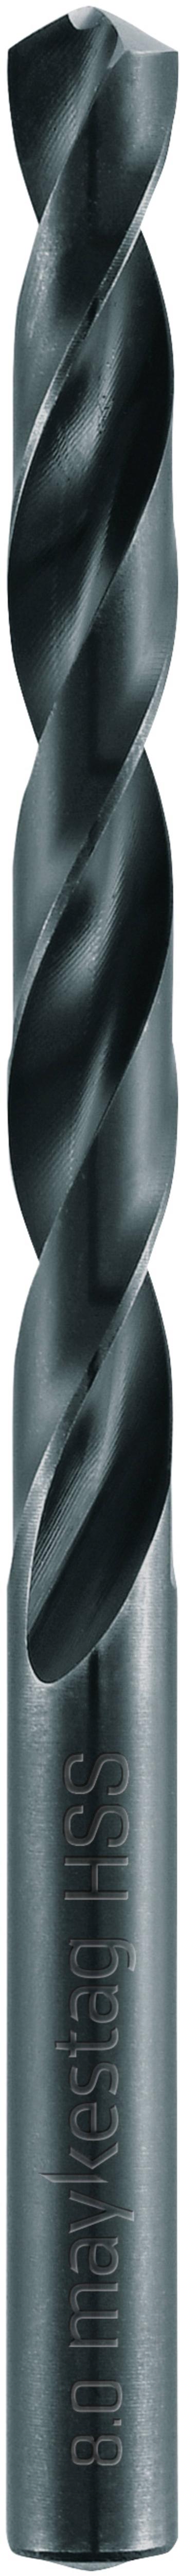 Alpen 0060101280100 HSS špirálový vrták  12.8 mm Celková dĺžka 151 mm  DIN 338  5 ks